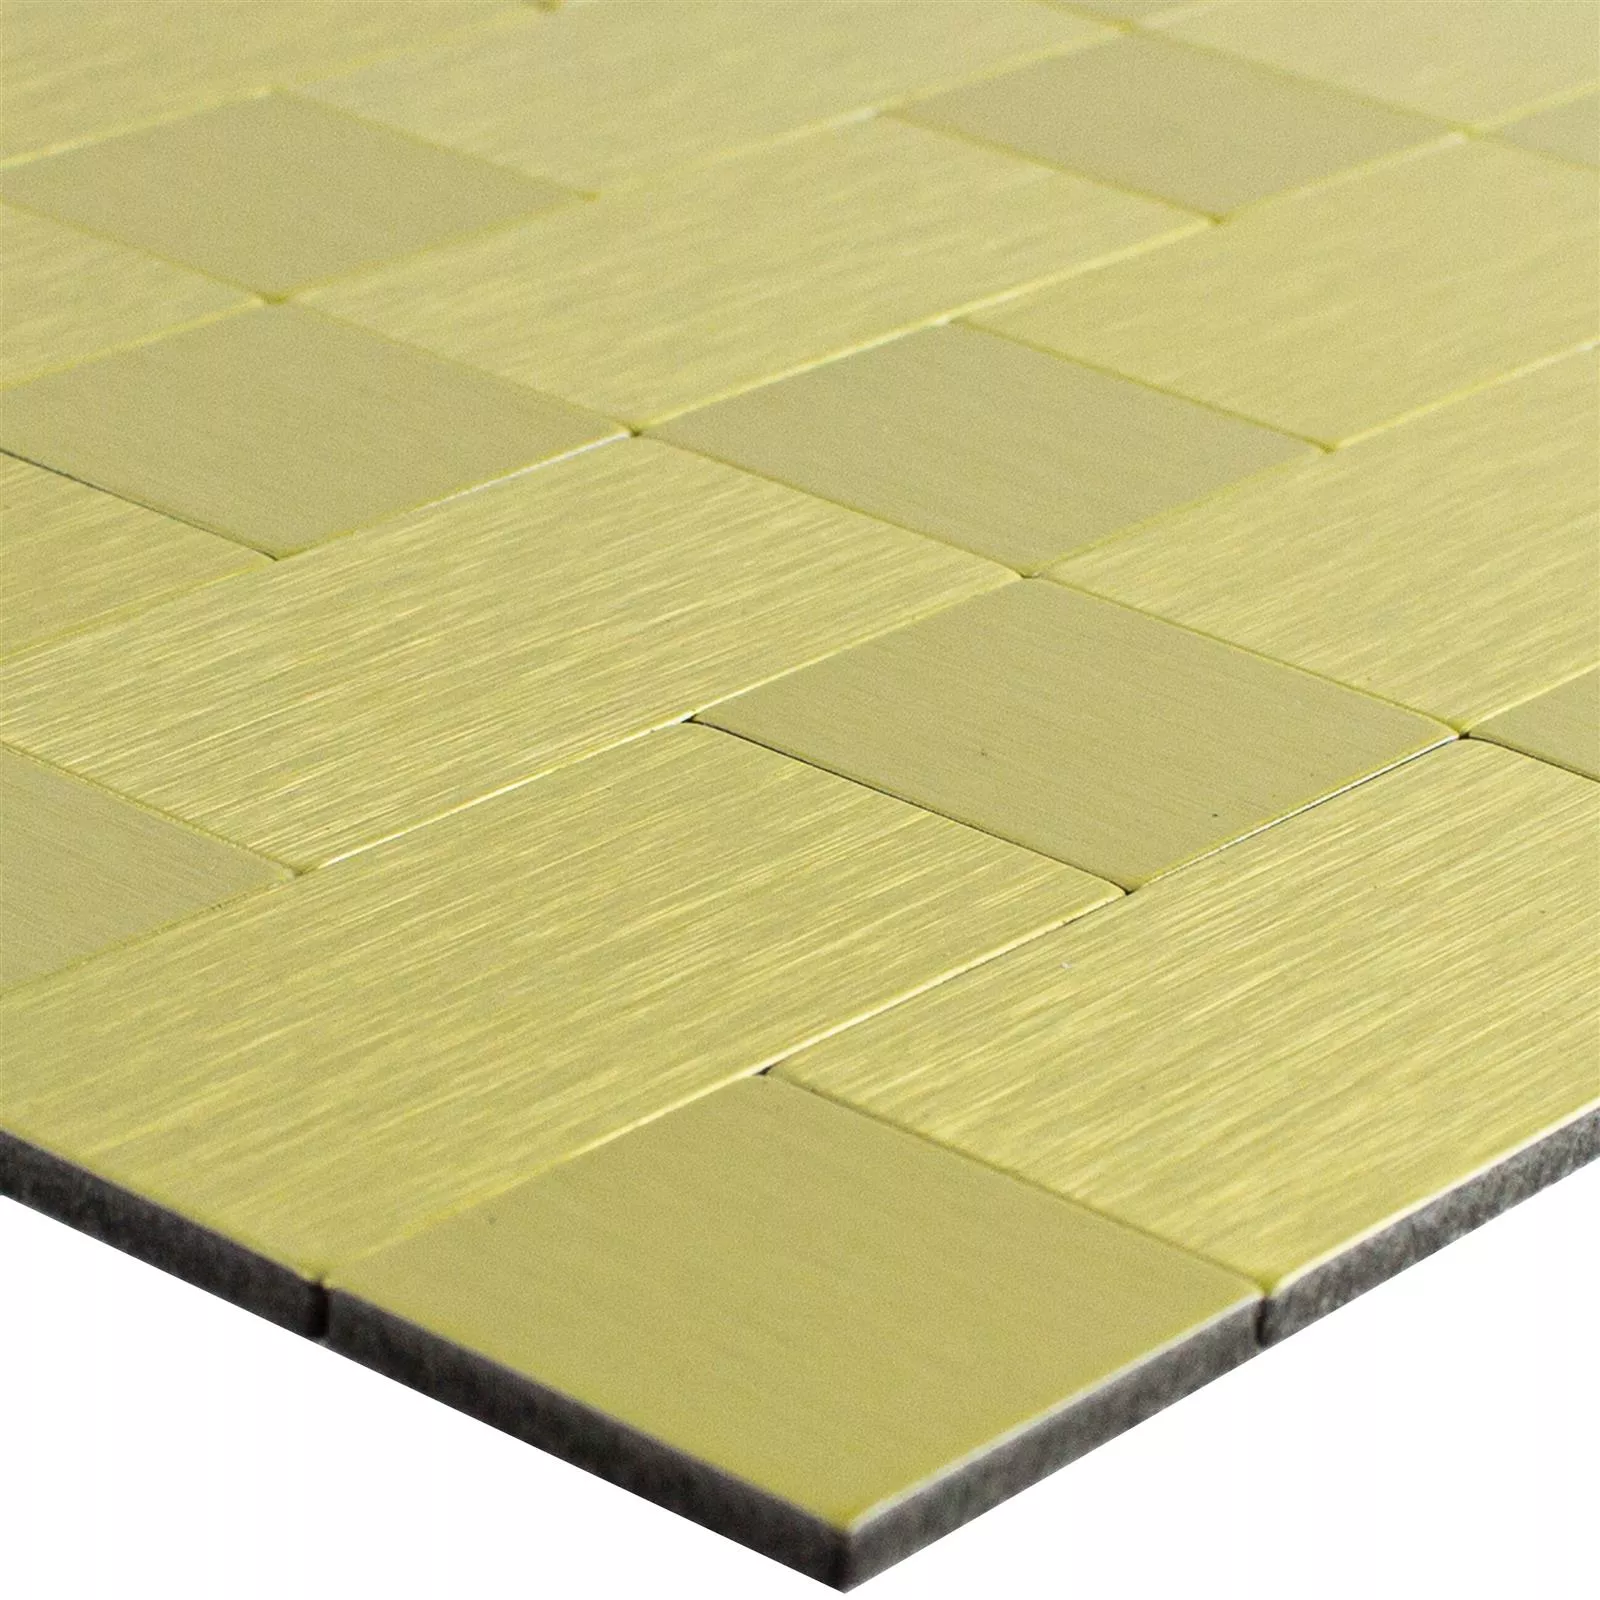 Muster von Mosaikfliesen Metall Selbstklebend Vryburg Gold Kombi